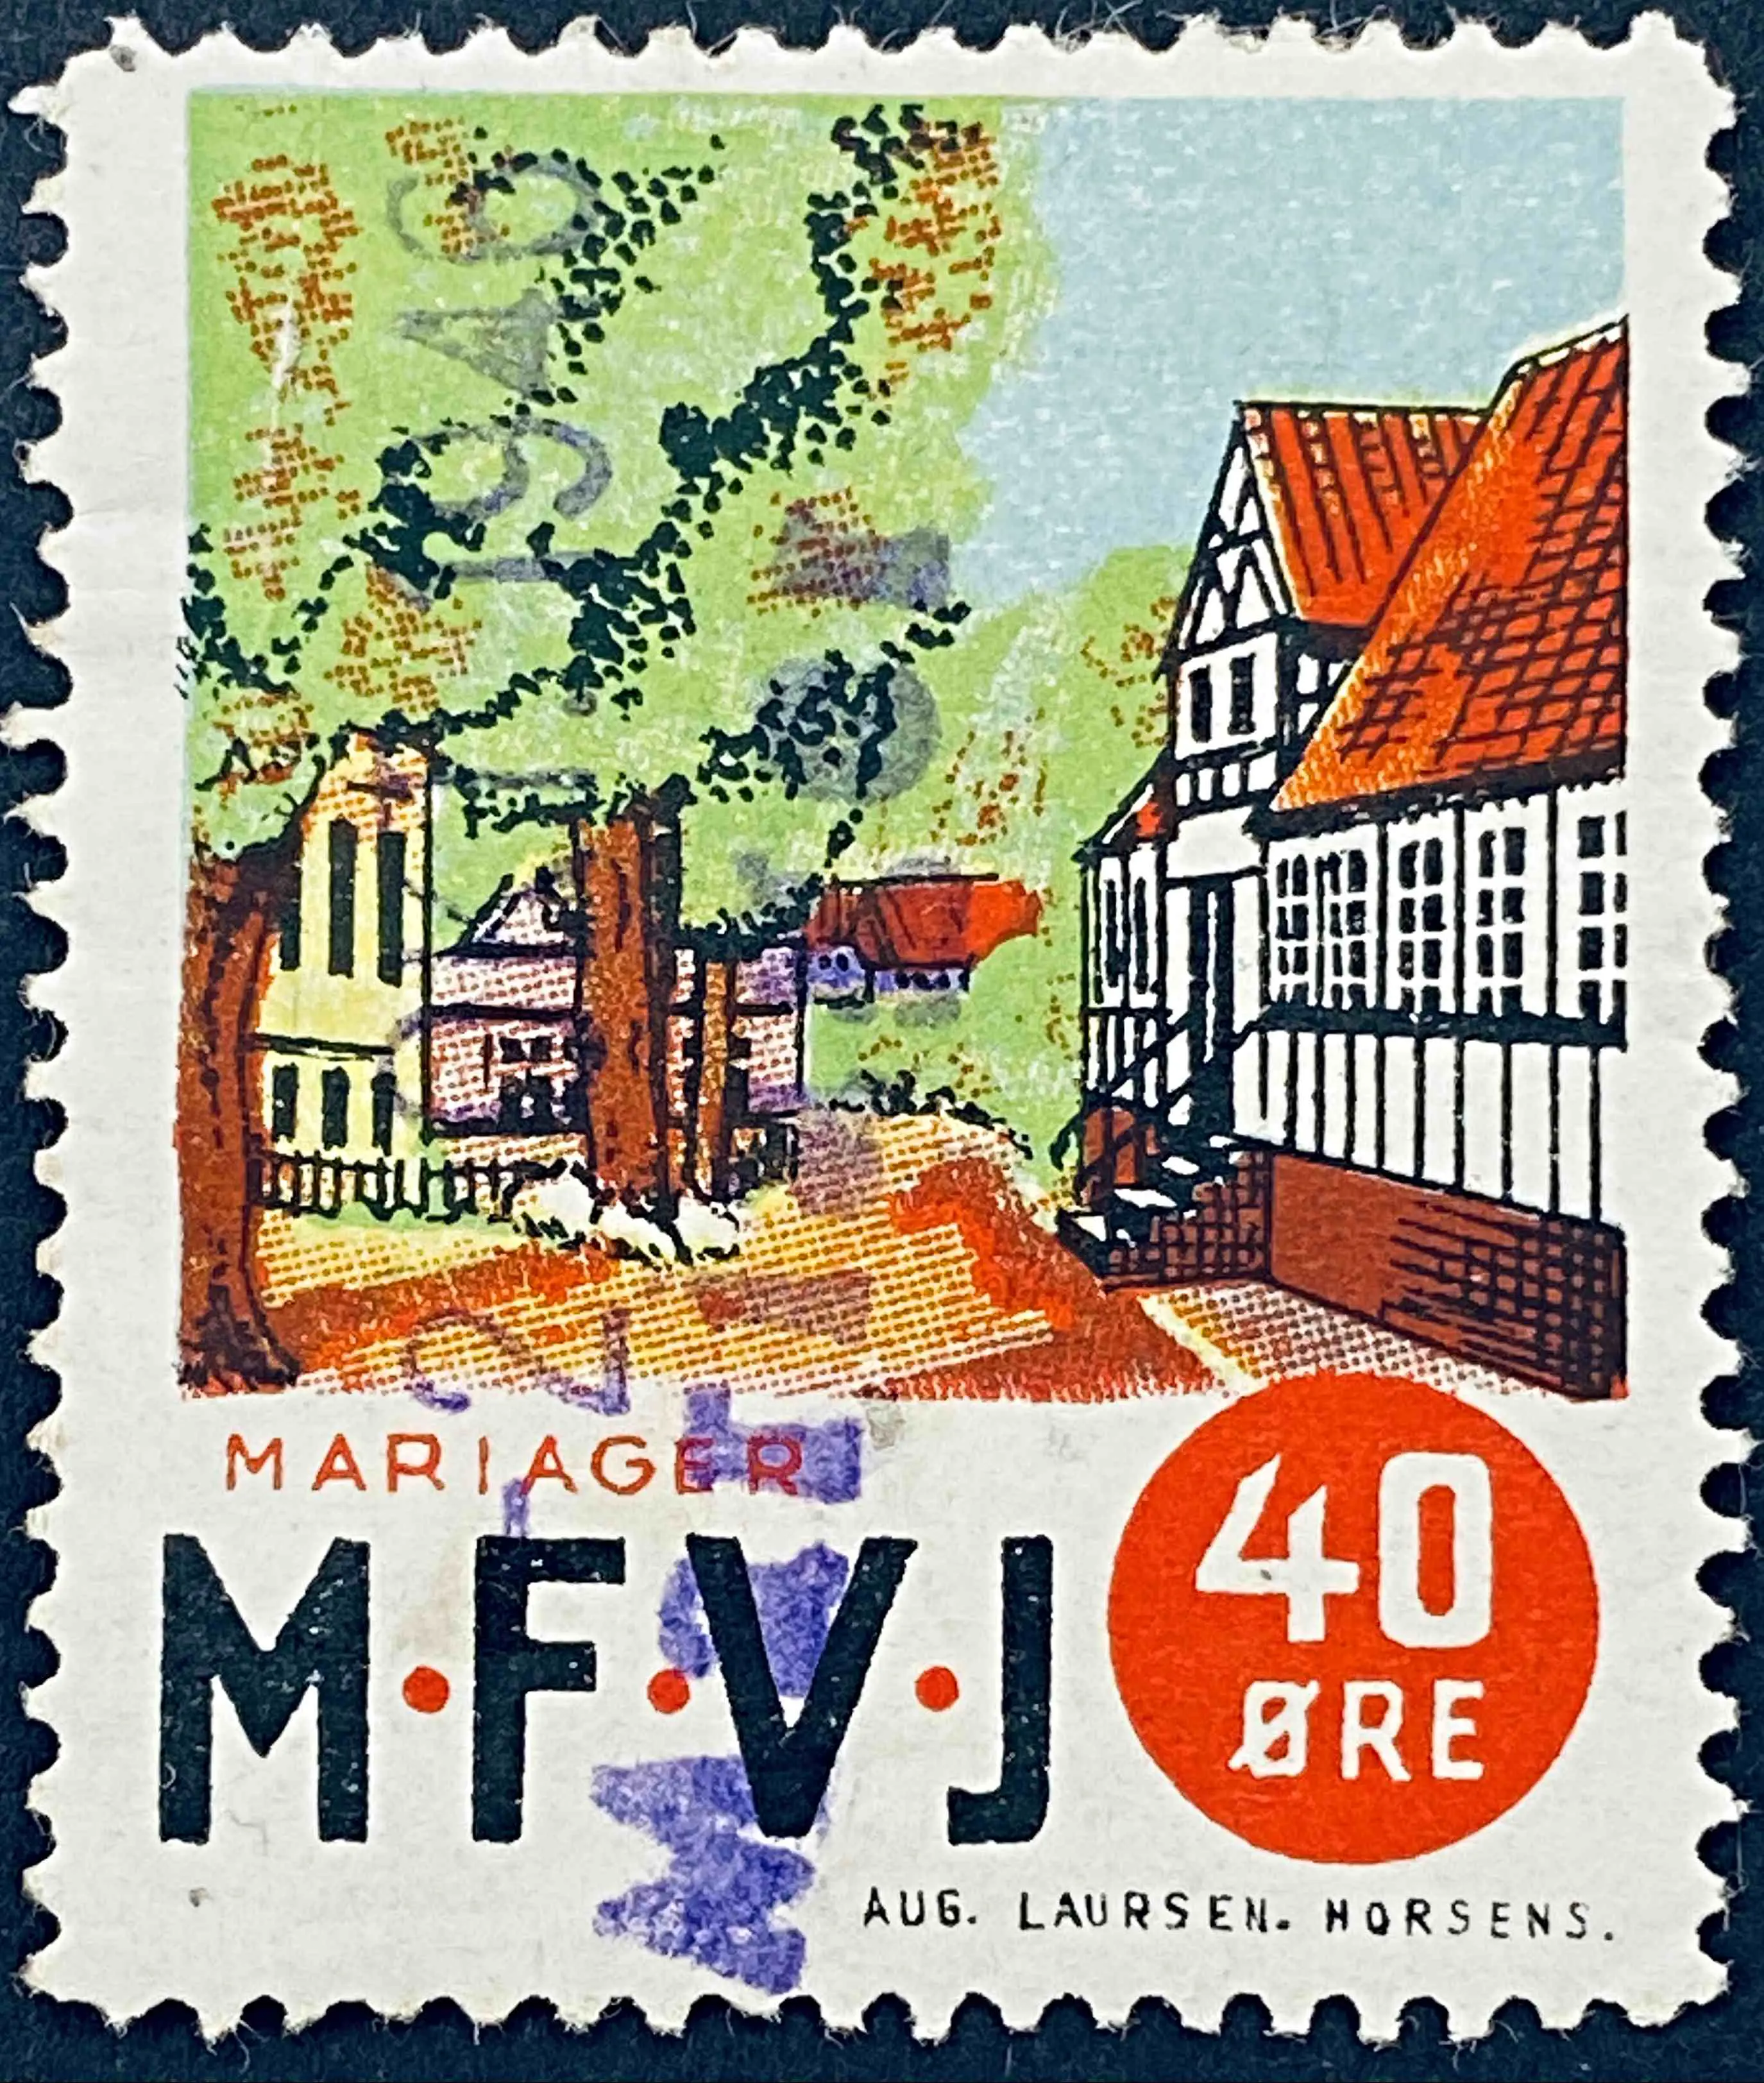 MFVJ 13 - 40 Øre Motiv: Mariager Torv - Flerfarvet - trykkeri: Aug. Laursen: Horsens.